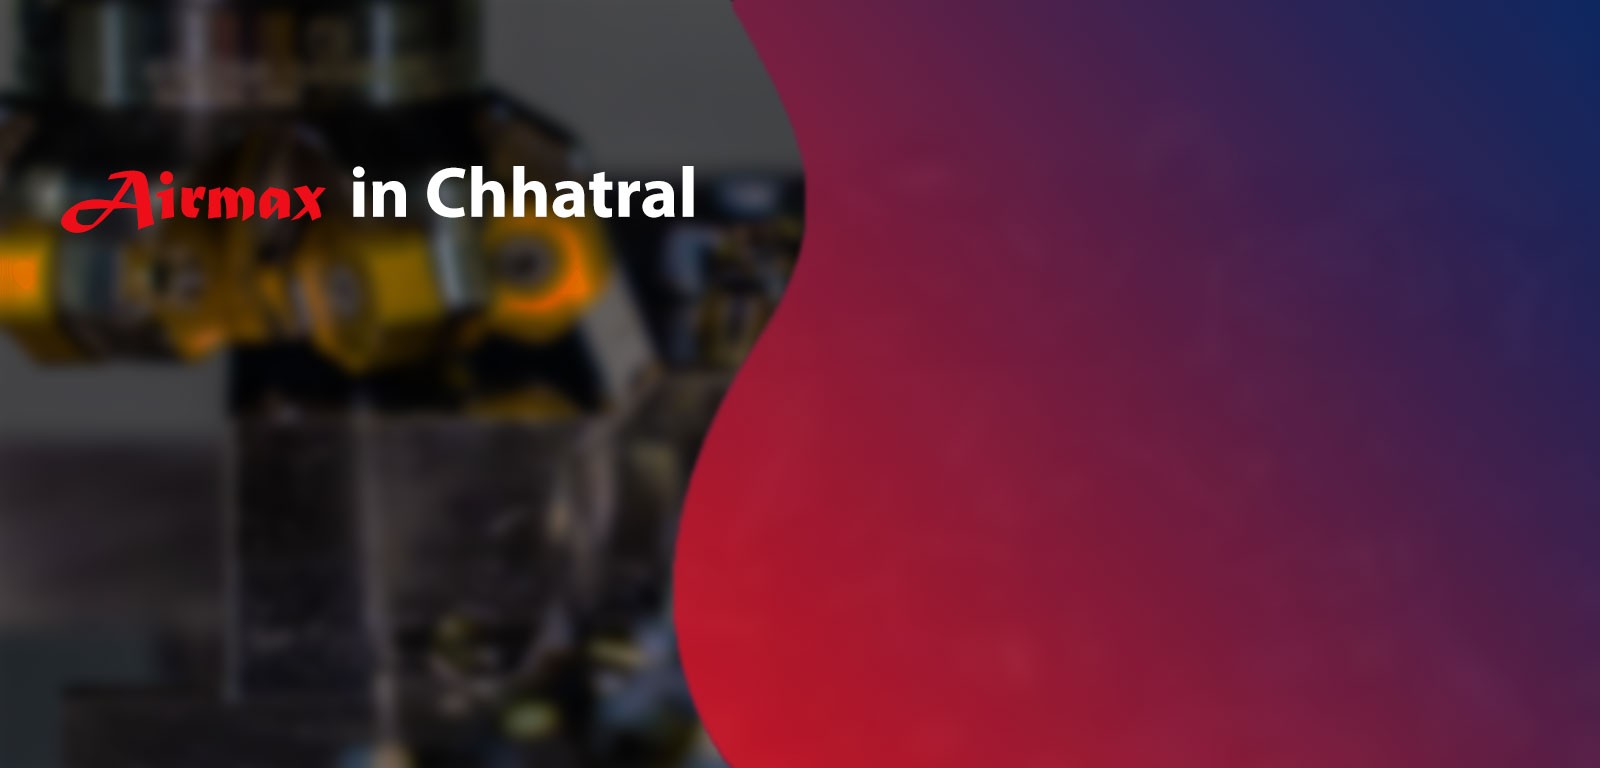 Airmax in Chhatral